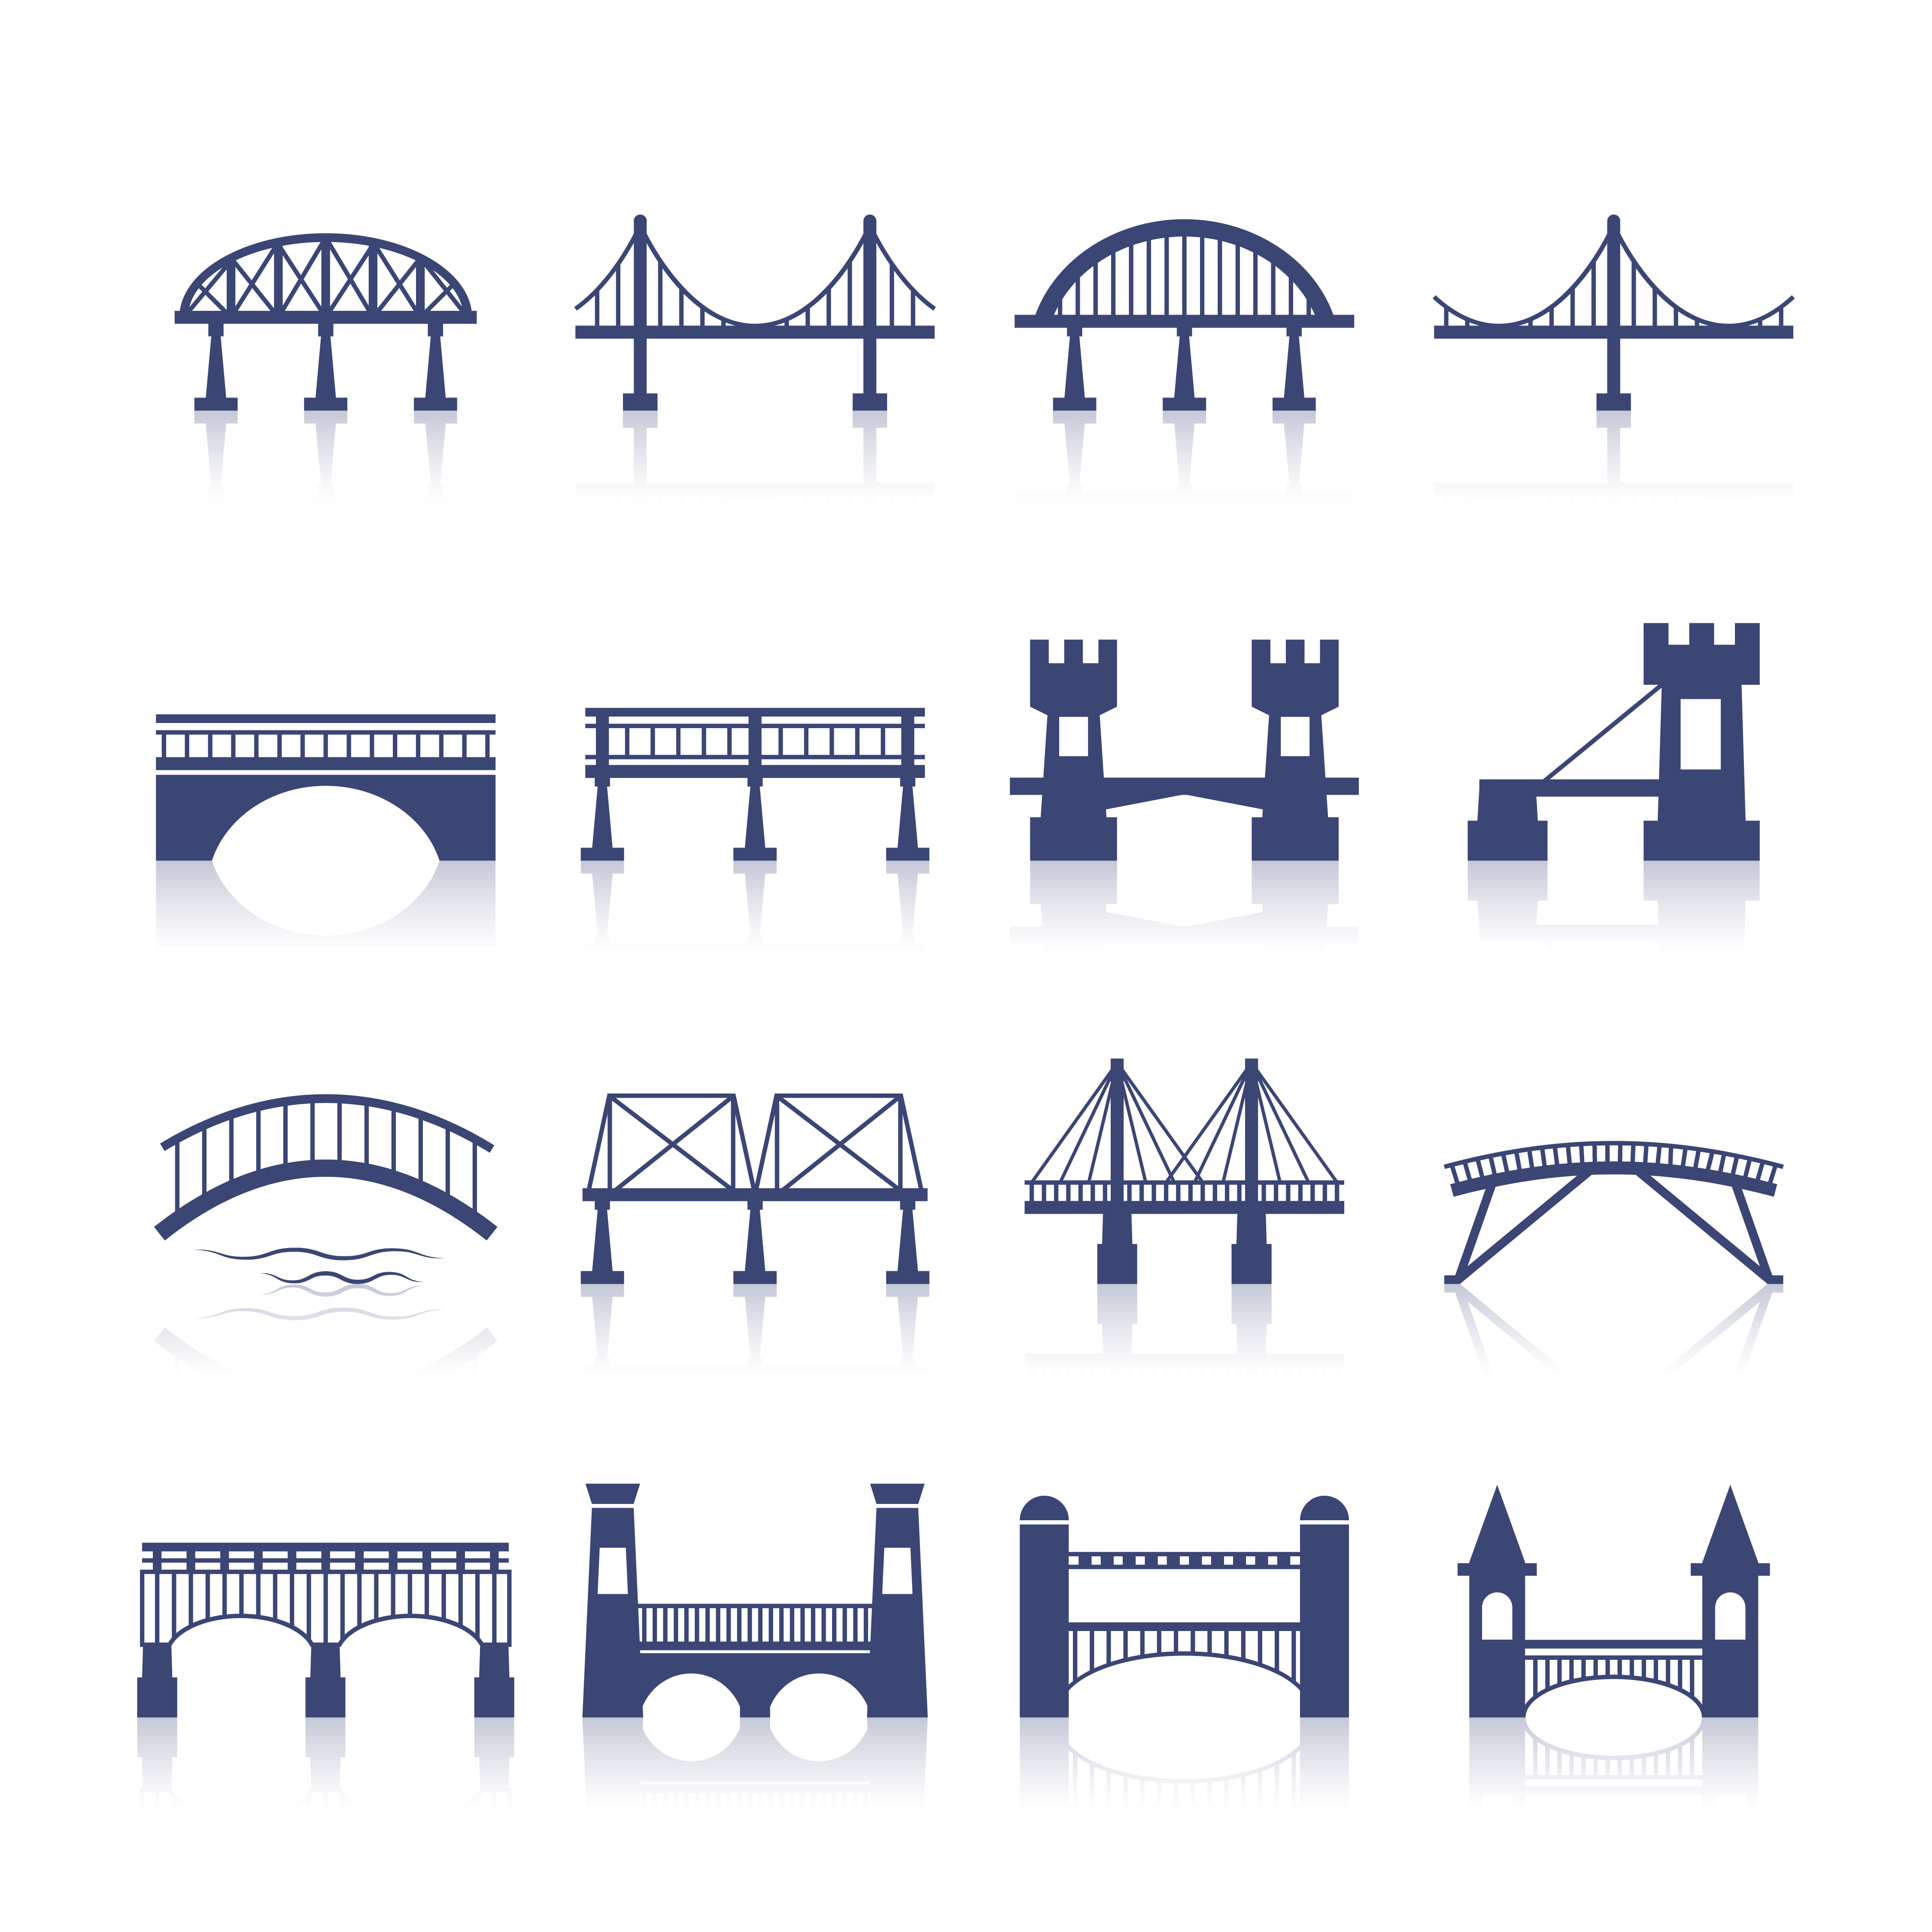 Download Bridge Icons Set - Download Free Vectors, Clipart Graphics & Vector Art